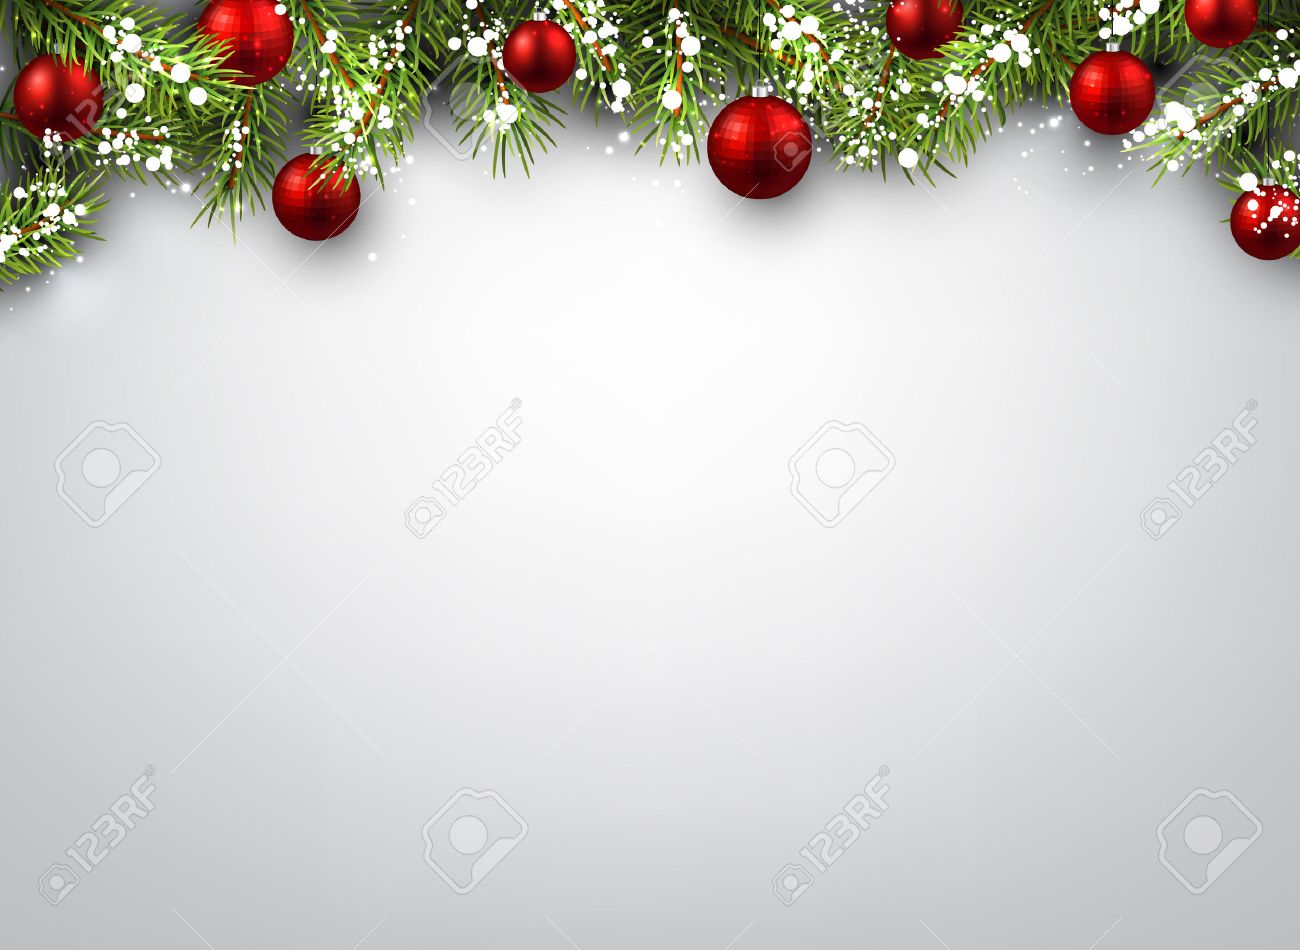 Hãy tưởng tượng bạn đang đứng giữa một mênh mông không gian lễ hội Giáng sinh. Hậu trường Giáng sinh đầy màu sắc bao quanh bạn với hình ảnh của những ông già Noel, tuần lộc và cây thông Noel. Những đám mây trắng nhẹ nhàng giống như những tuyết rơi ùa xuống tạo nên một bầu không khí phấn khích dịu dàng. Hãy xem hình ảnh lớn của chúng tôi để cảm nhận sự ấm áp của lễ hội Giáng sinh.